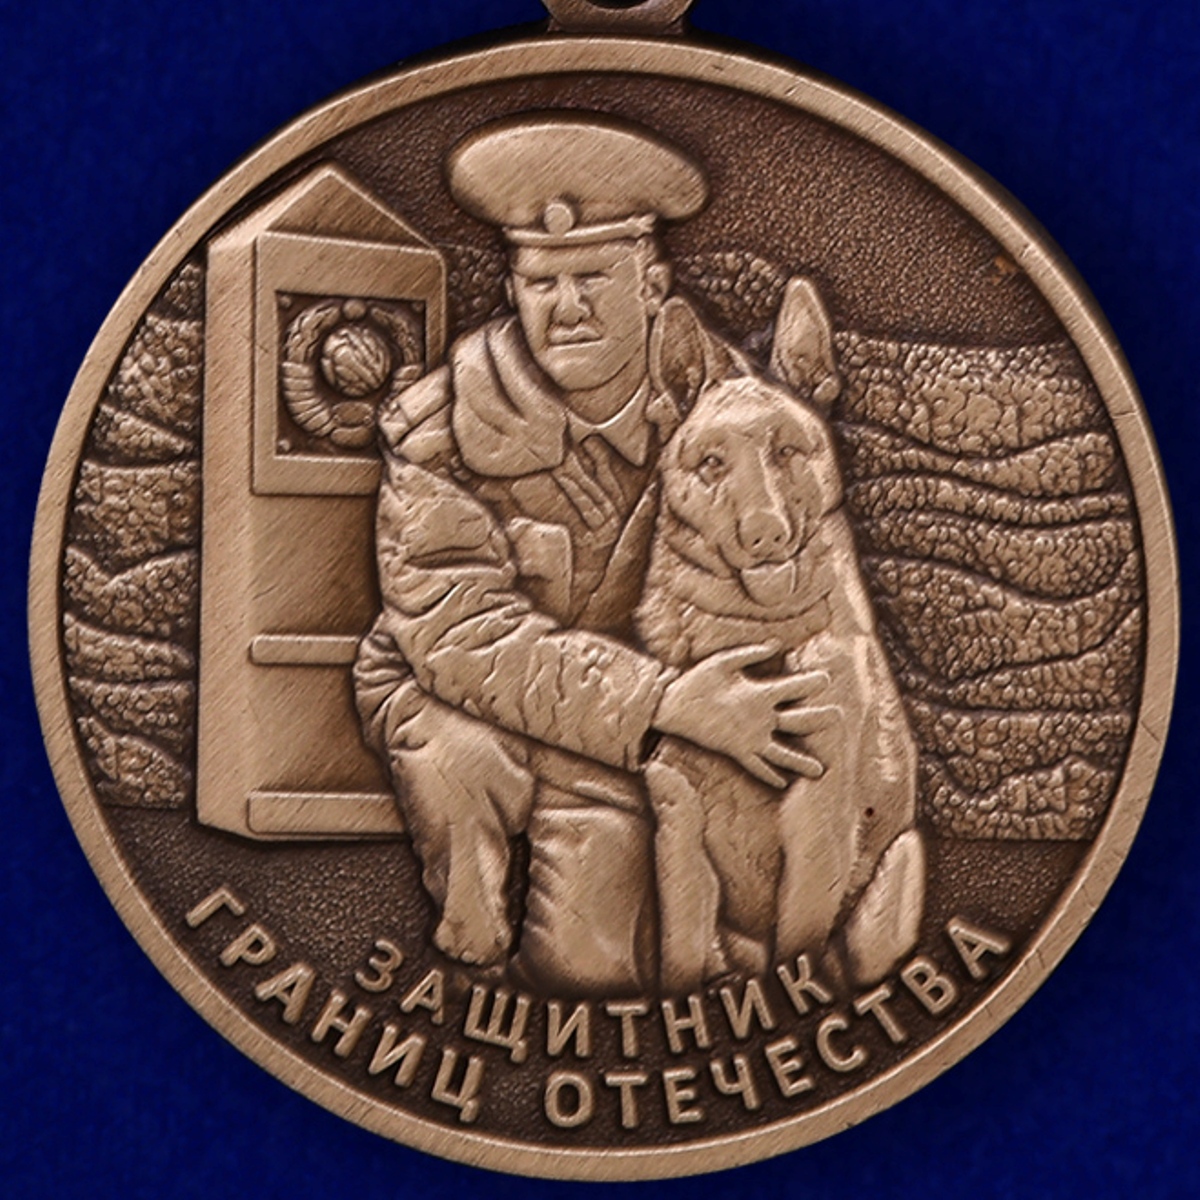 Медаль "Ветеран пограничных войск" 